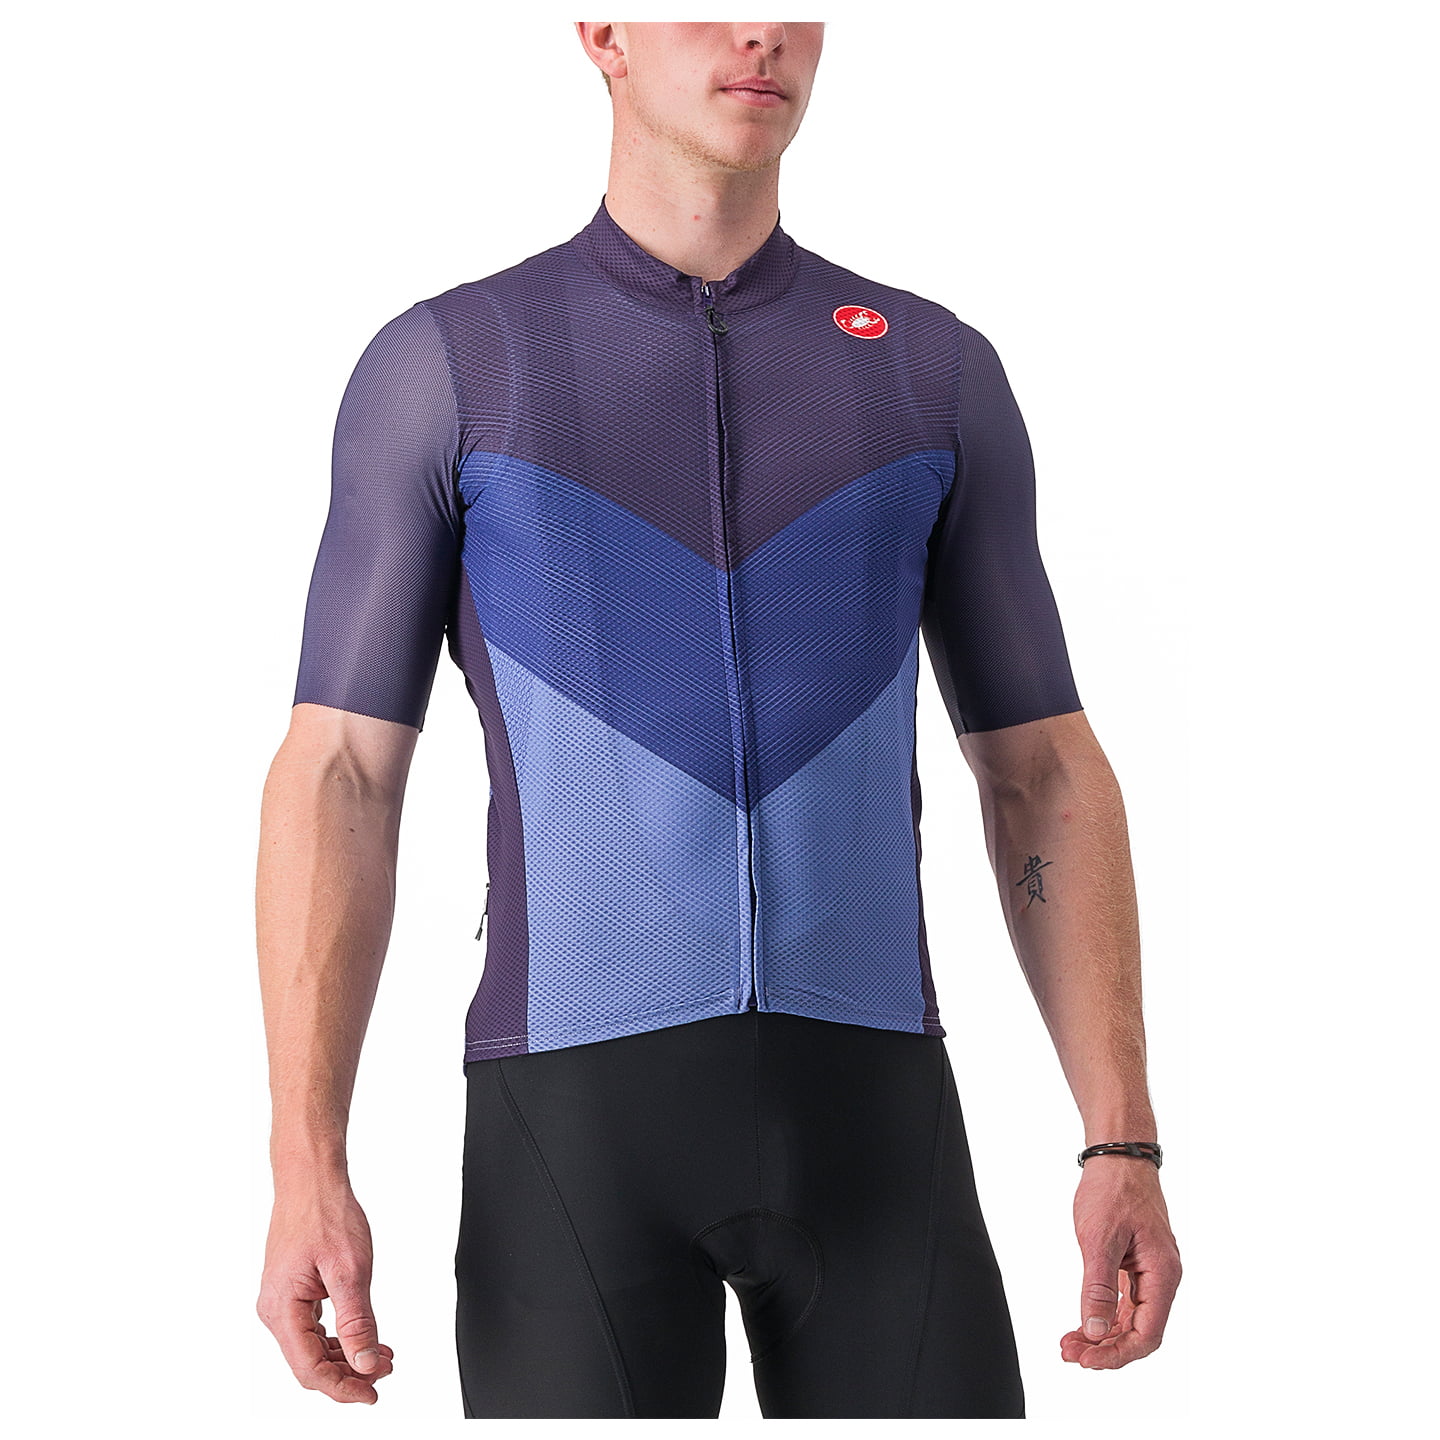 CASTELLI Endurance Pro 2 Short Sleeve Jersey Short Sleeve Jersey, for men, size S, Cycling jersey, Cycling clothing